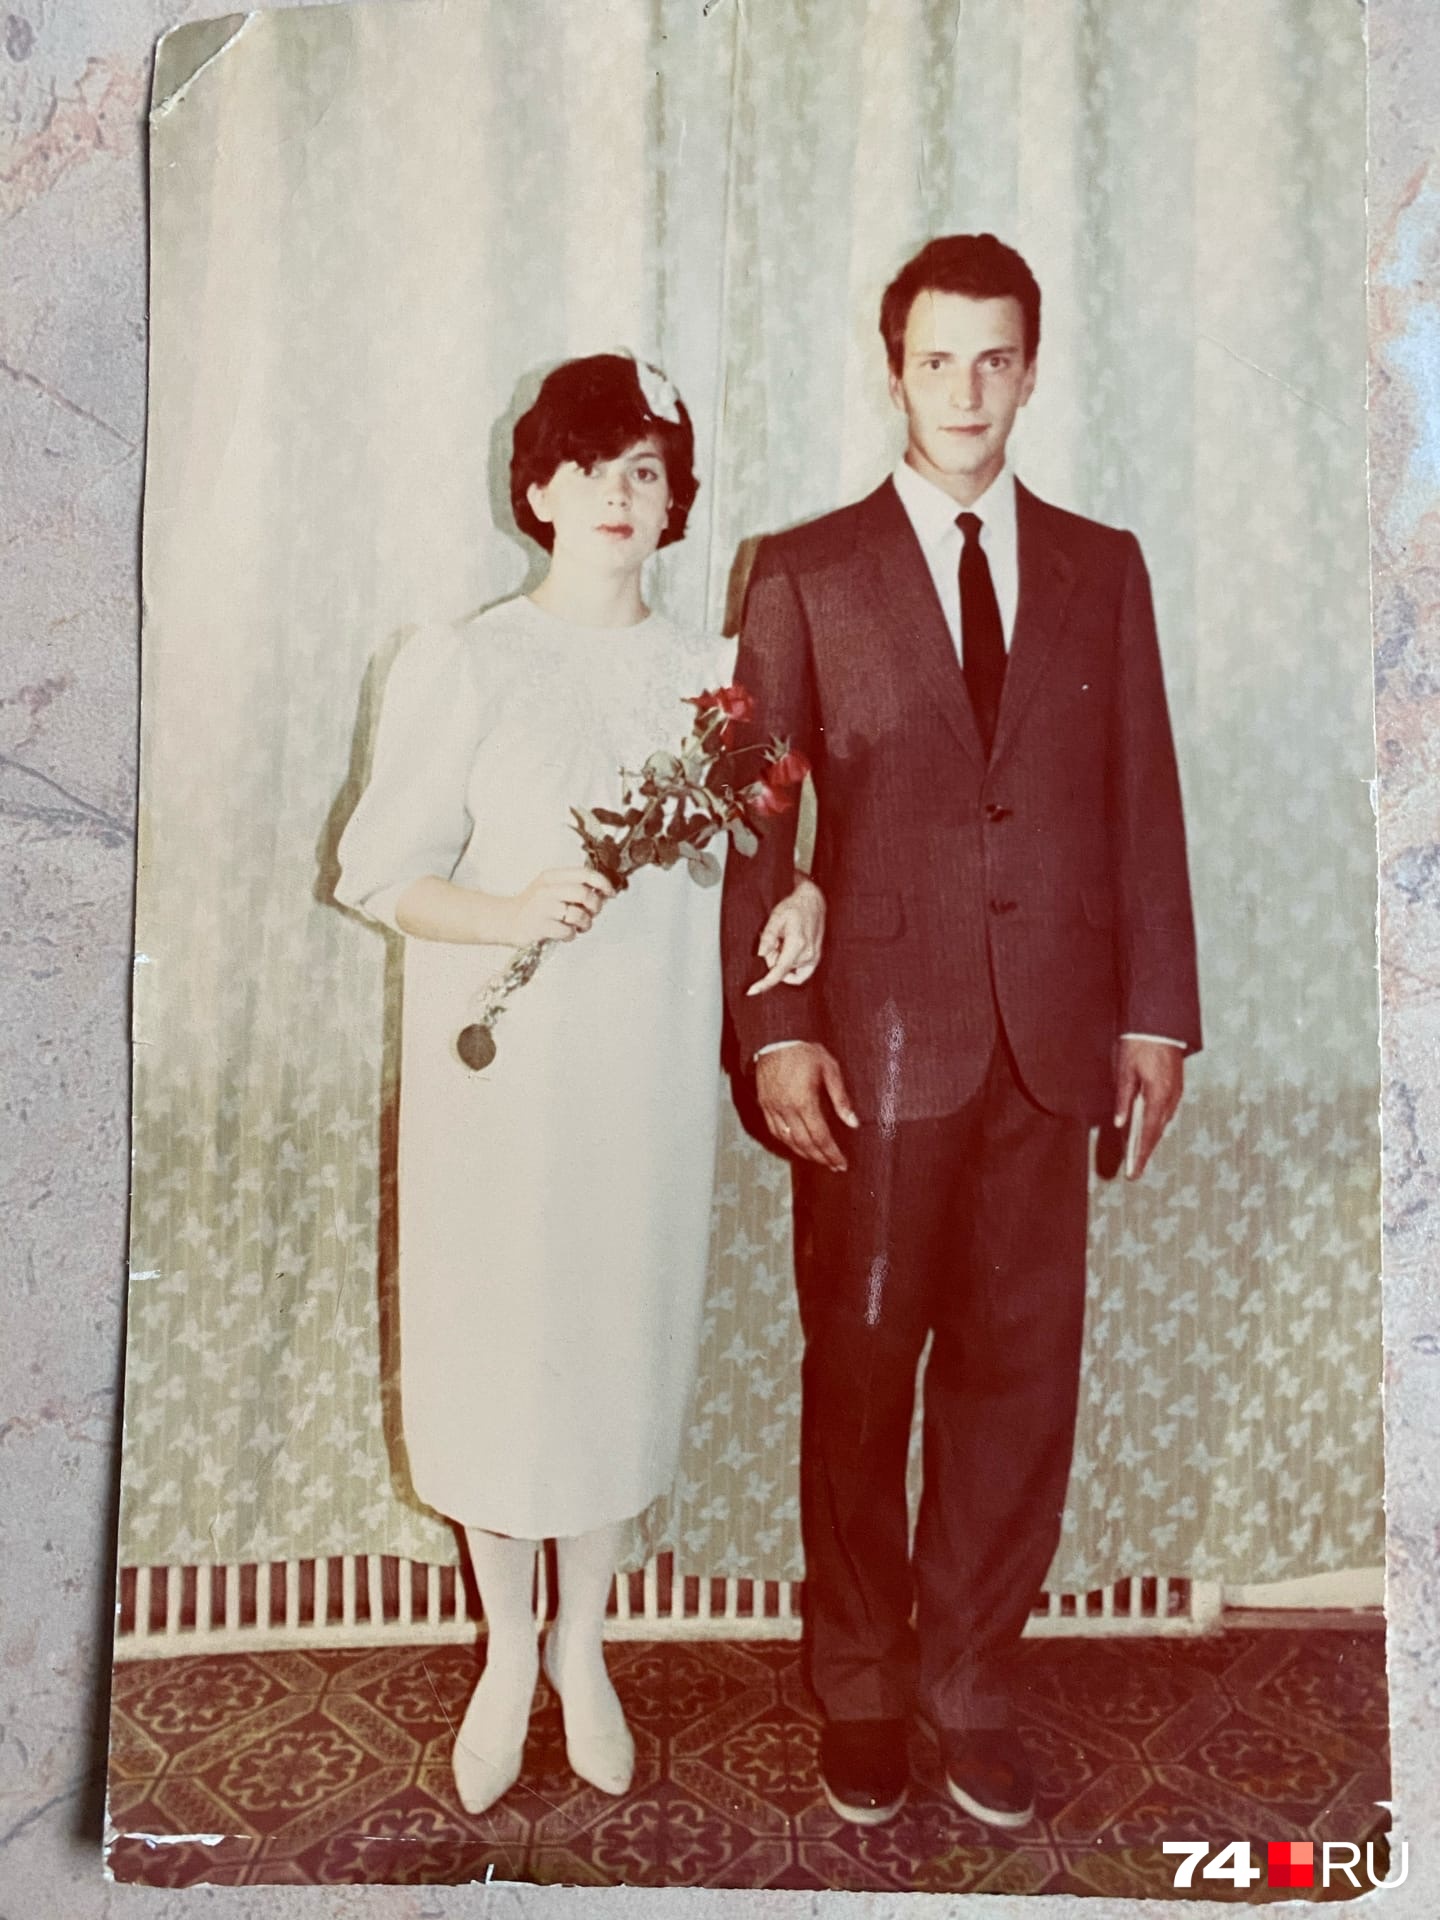 А эта юная пара — Станислав и Татьяна, они поженились 1 июля 1988 года